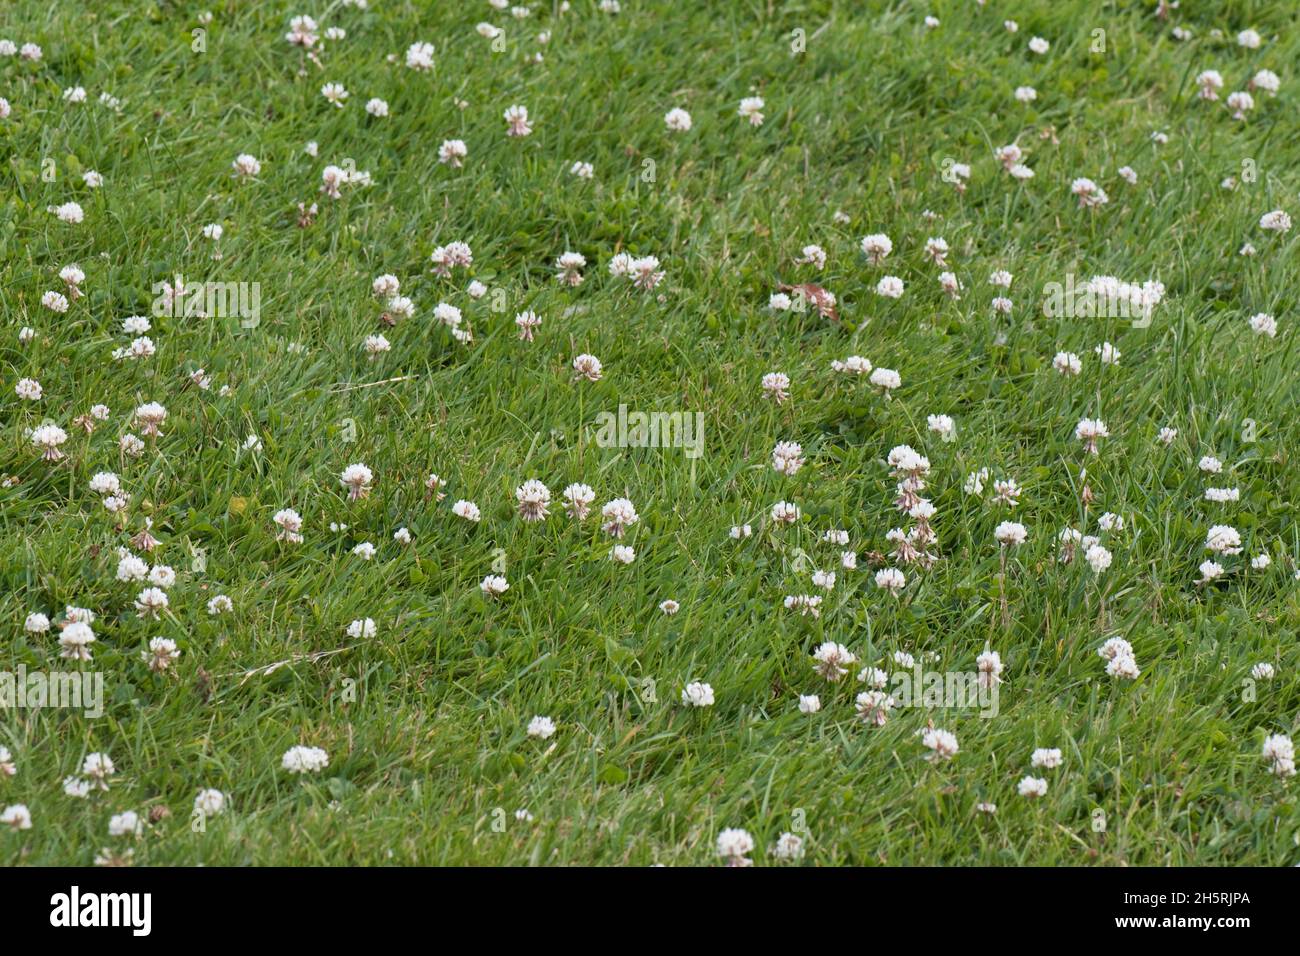 Trébol blanco en flor (Trifolium repens) con la capacidad de fijar el nitrógeno gaseoso y competir las malas hierbas en pastizales cortos, Berkshire, julio Foto de stock